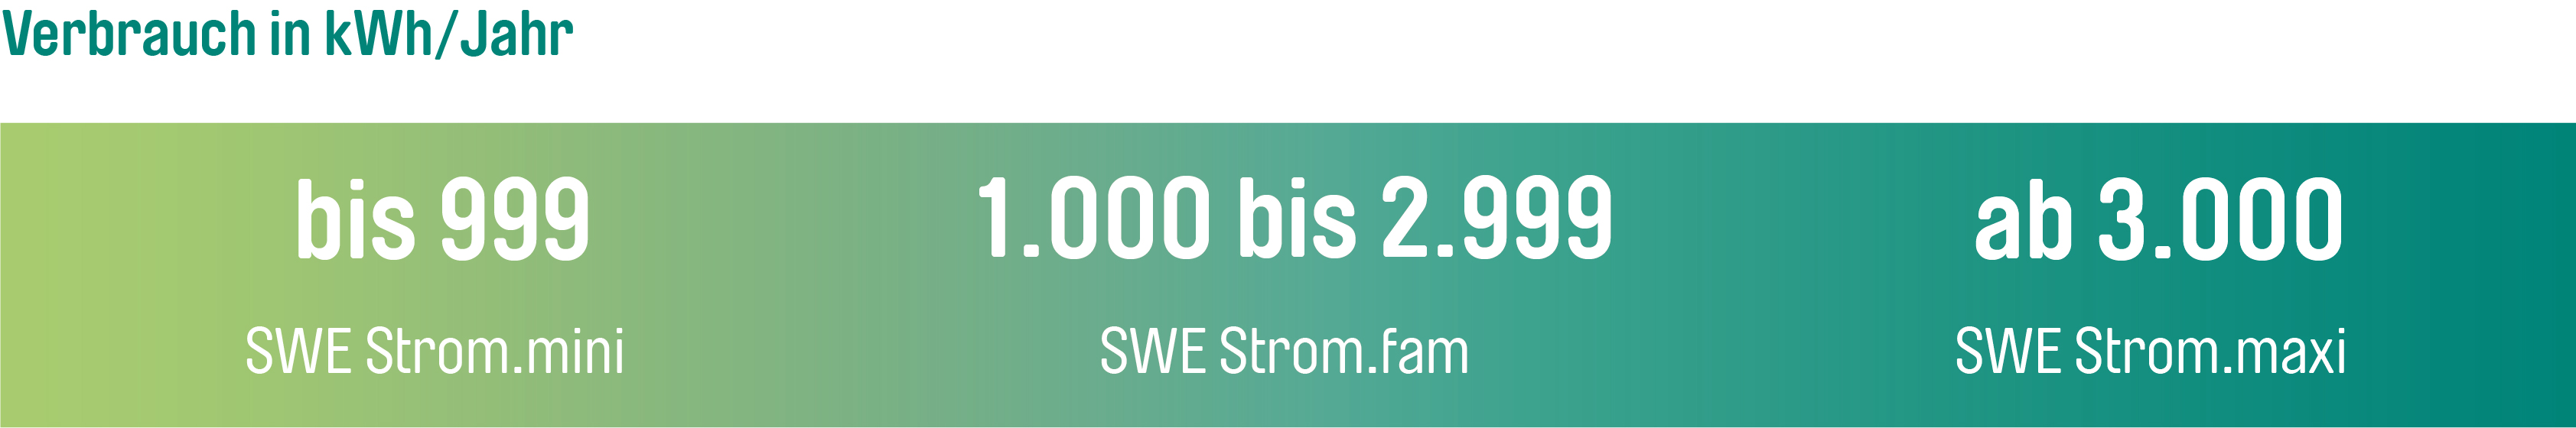 Bis 9.999 kWh erhält man den Tarif SWE Strom.mini, von 10.000 bis 29.999 kWh fam und ab 30.000 kWh den Tarif SWE Strom.maxi.